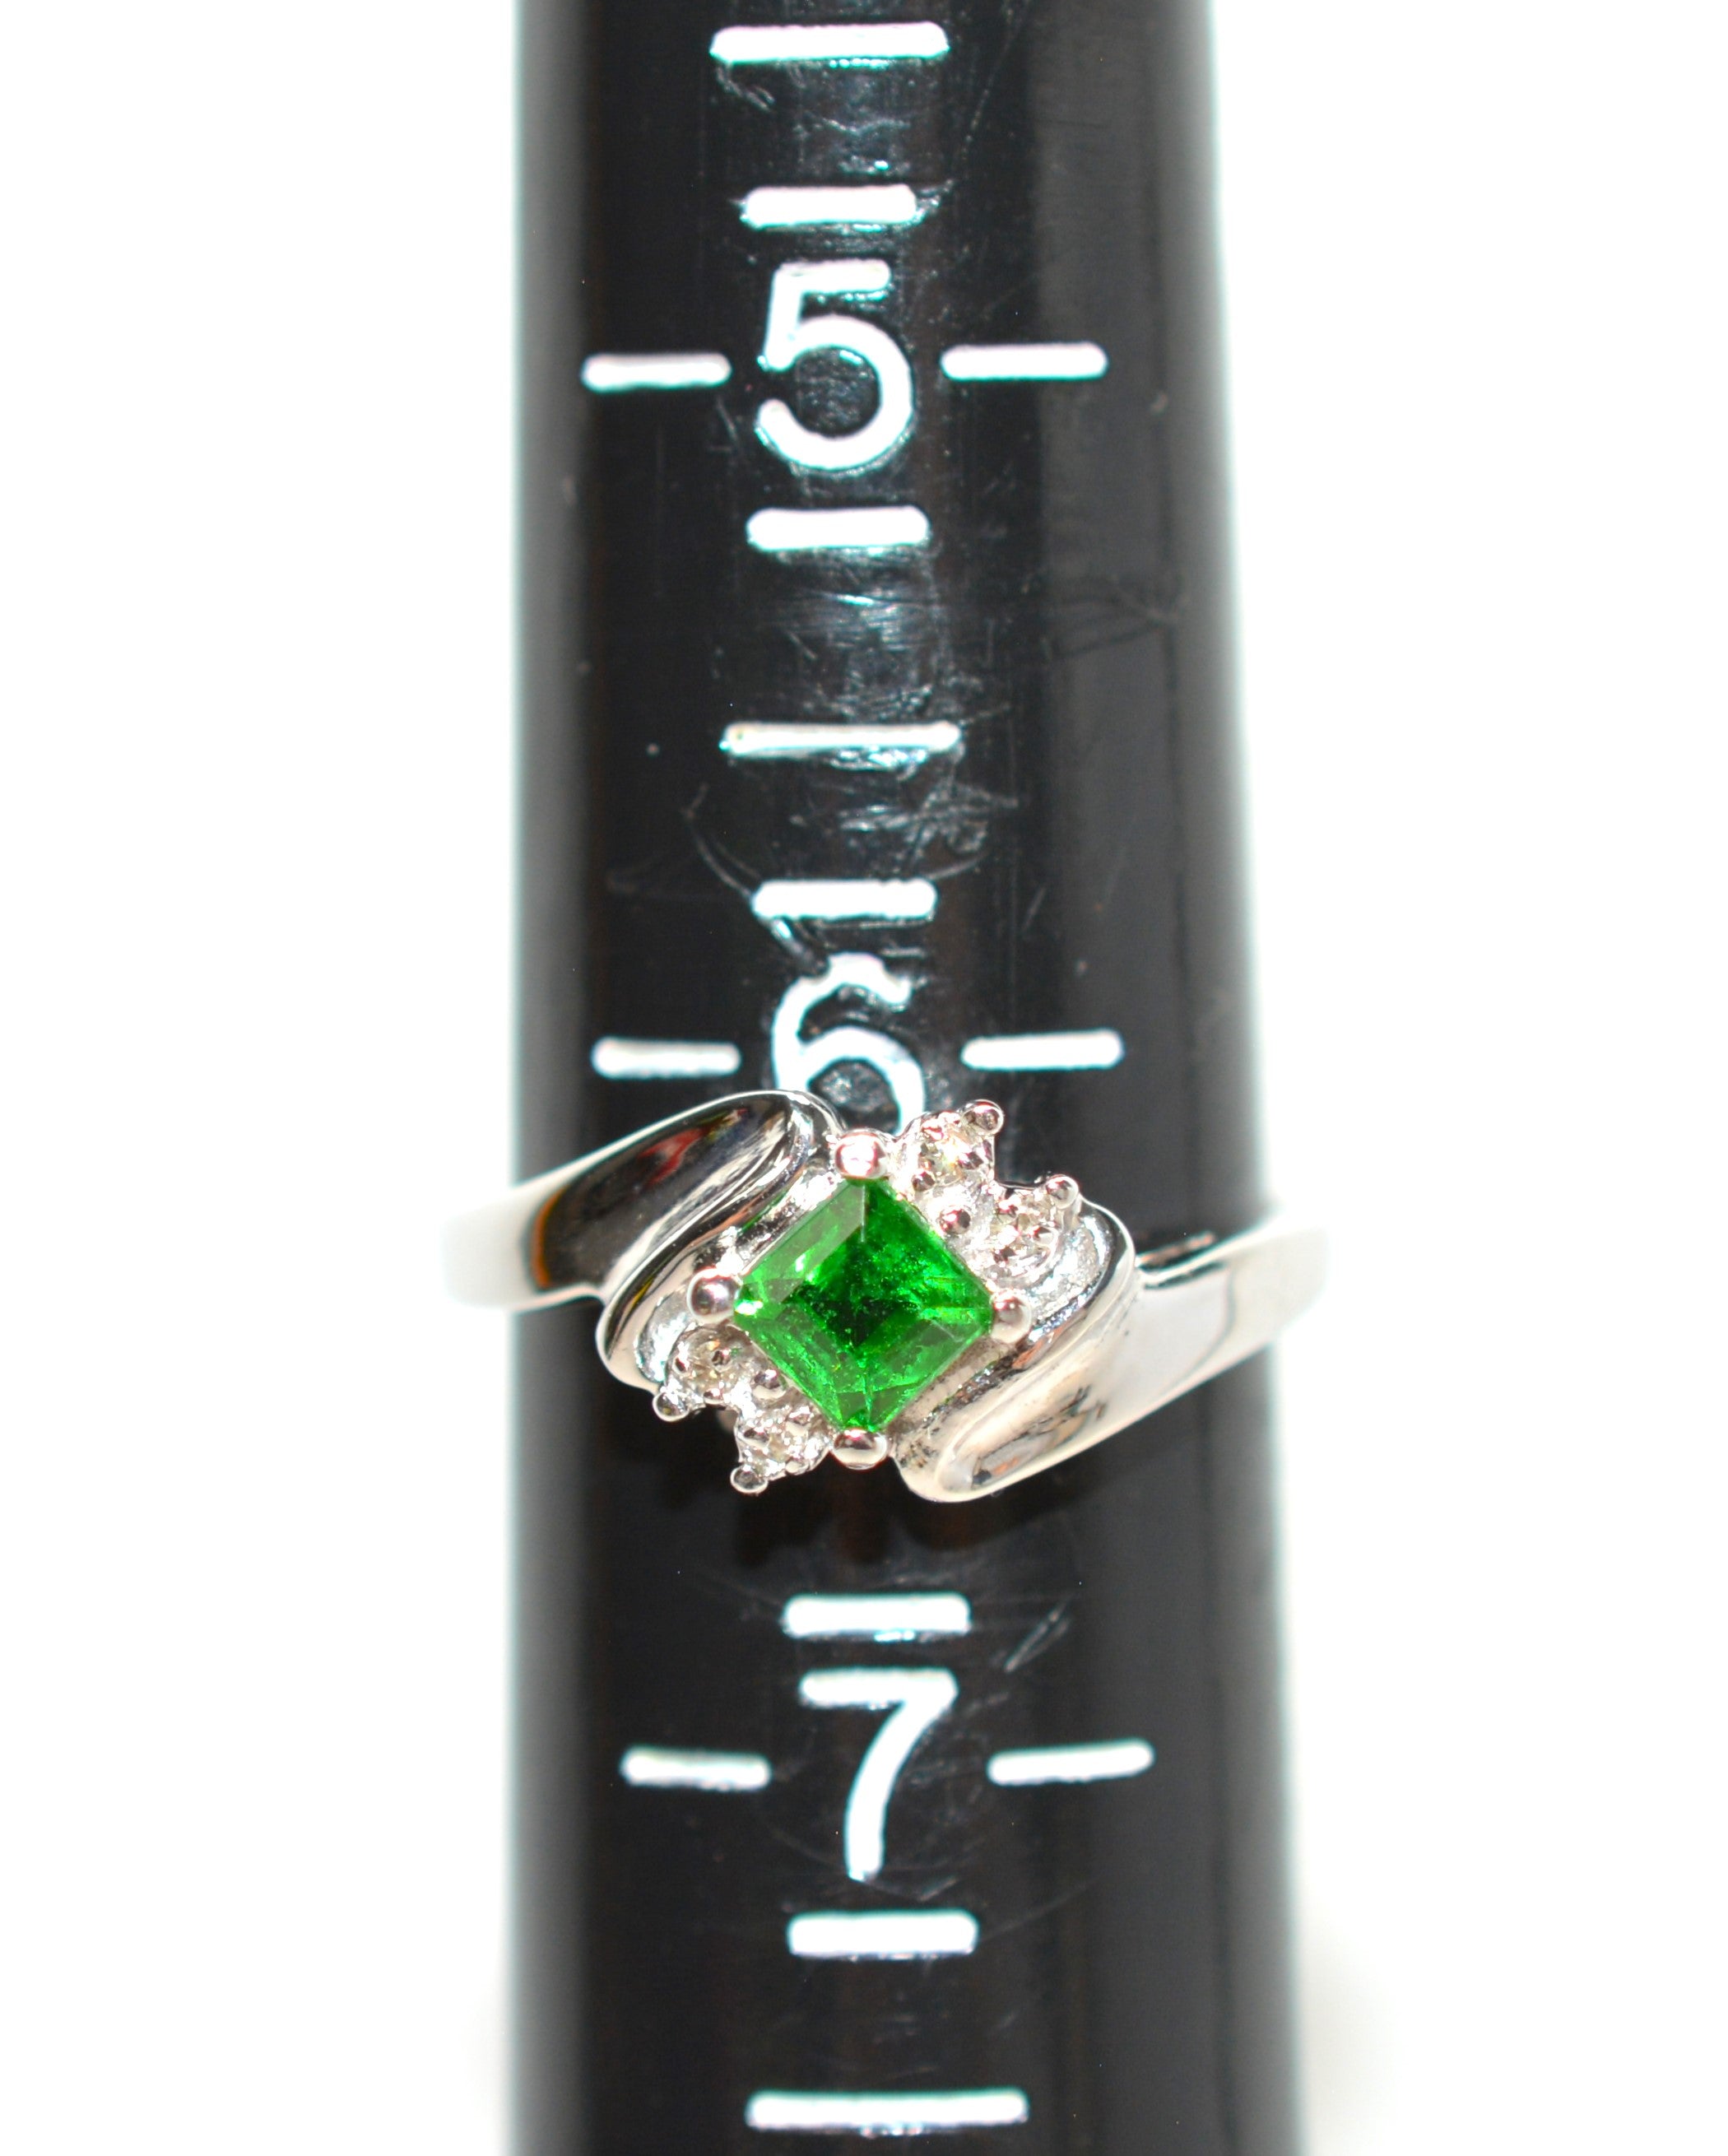 Natural Tsavorite Garnet & Diamond Ring 14K White Gold .57tcw Gemstone Ring Engagement Ring Women's Ring Wedding Ring Bridal Jewelry Green